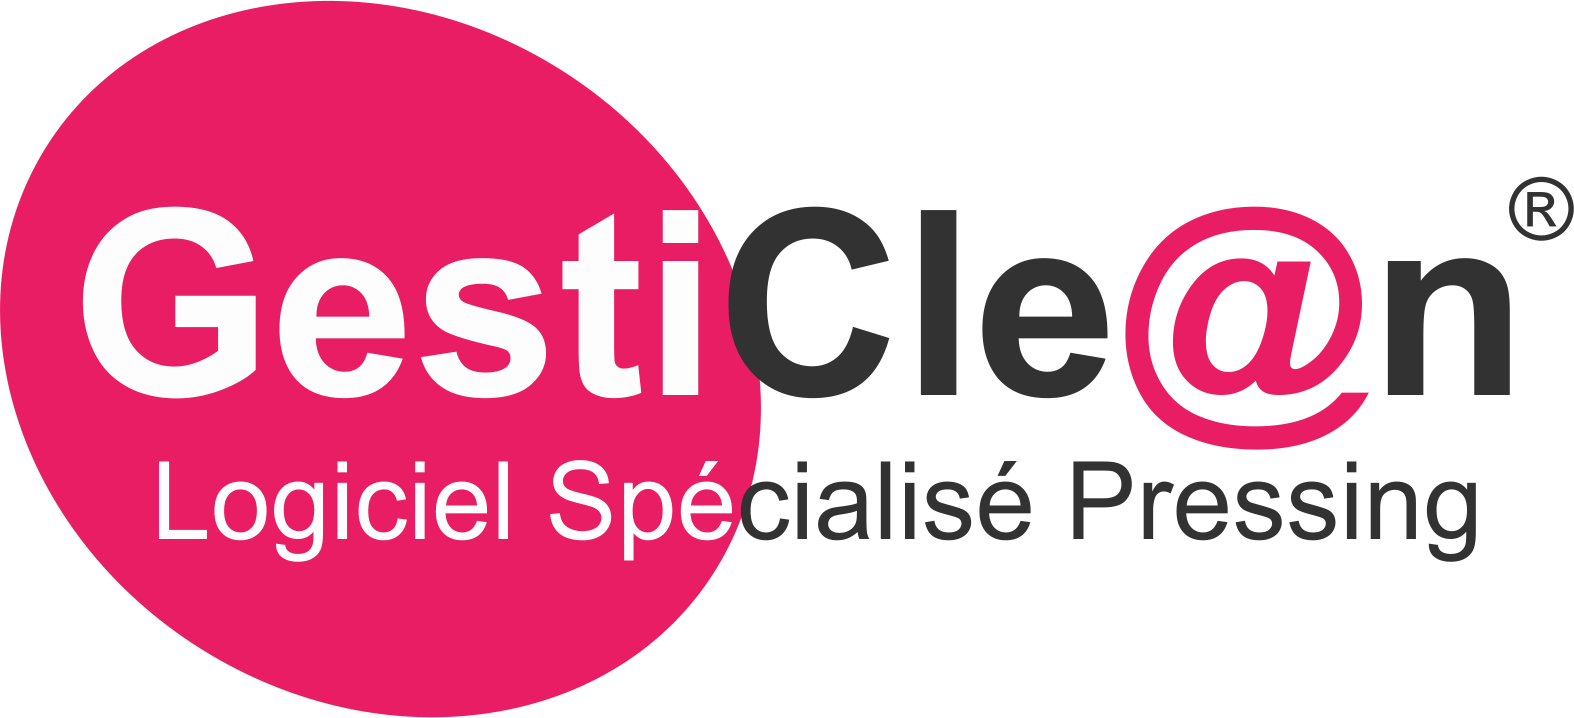 Logo GestiClean, logiciel gestion pressing